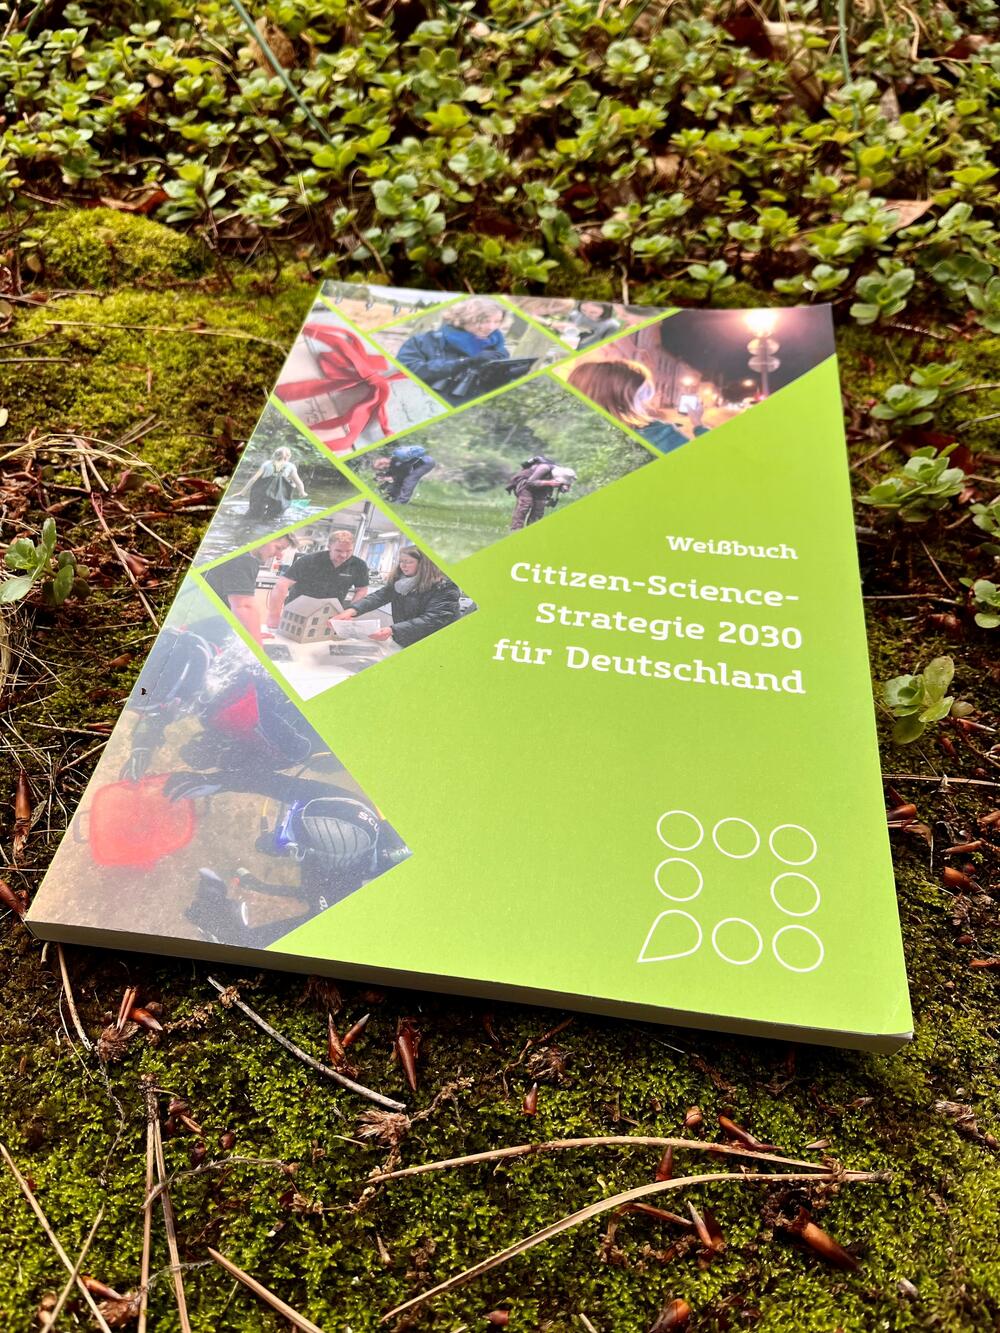 Das Weißbuch Citizen-Science-Strategie 2030 gibt in konkreten Handlungsempfehlungen vor, wie Citizen Science in Deutschland gestärkt werden kann © Kathrin Pohlmann/DBU